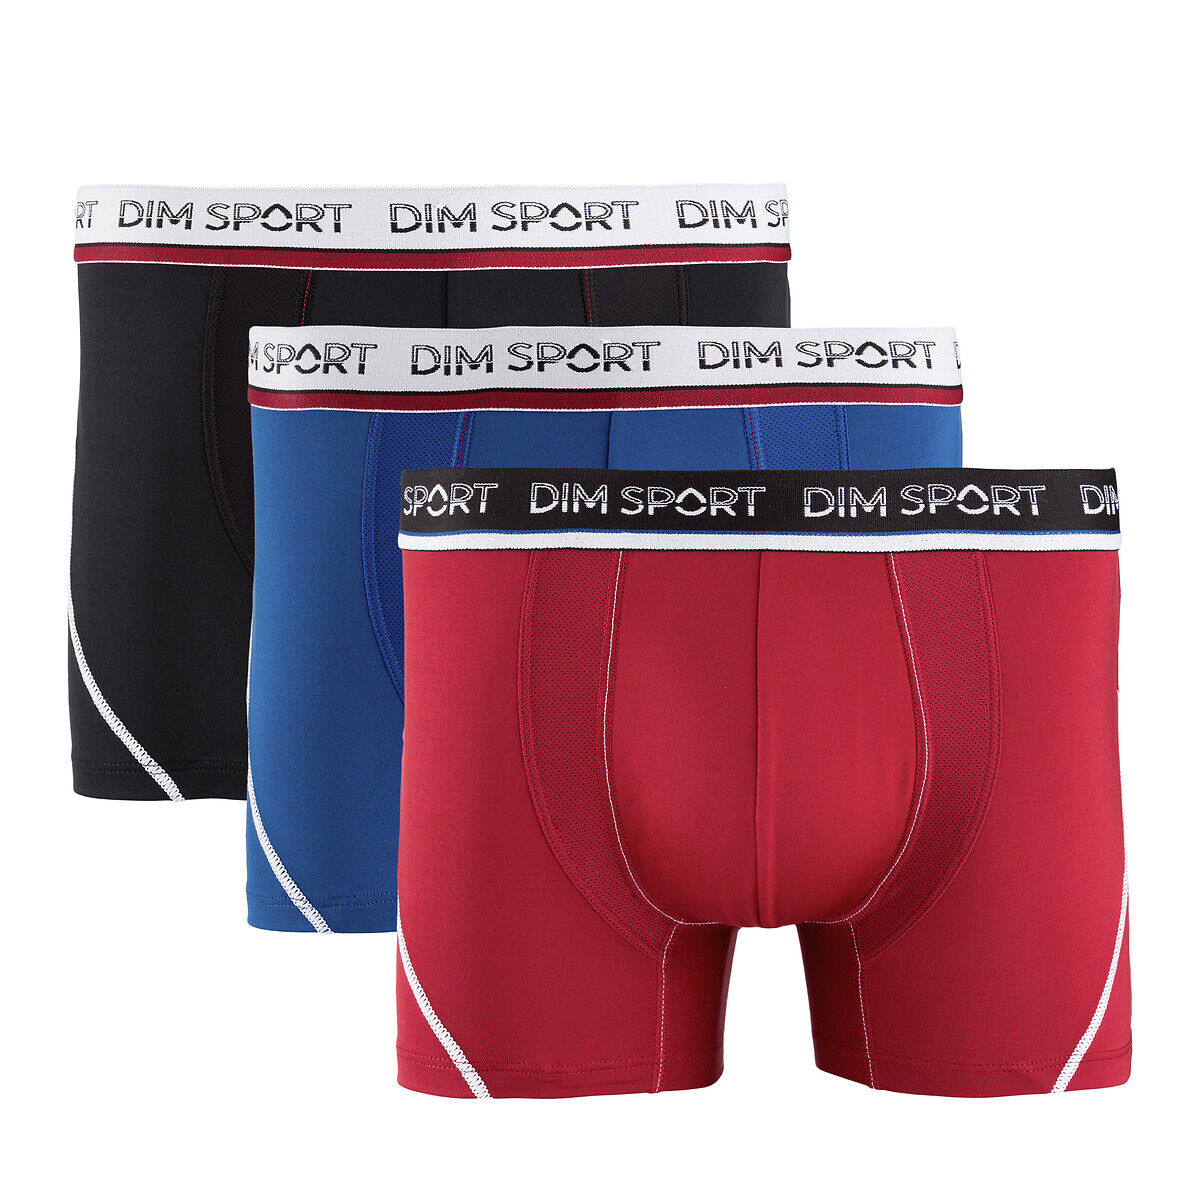 Dim Sport Lote de 3 boxers   Preto + azul + vermelho